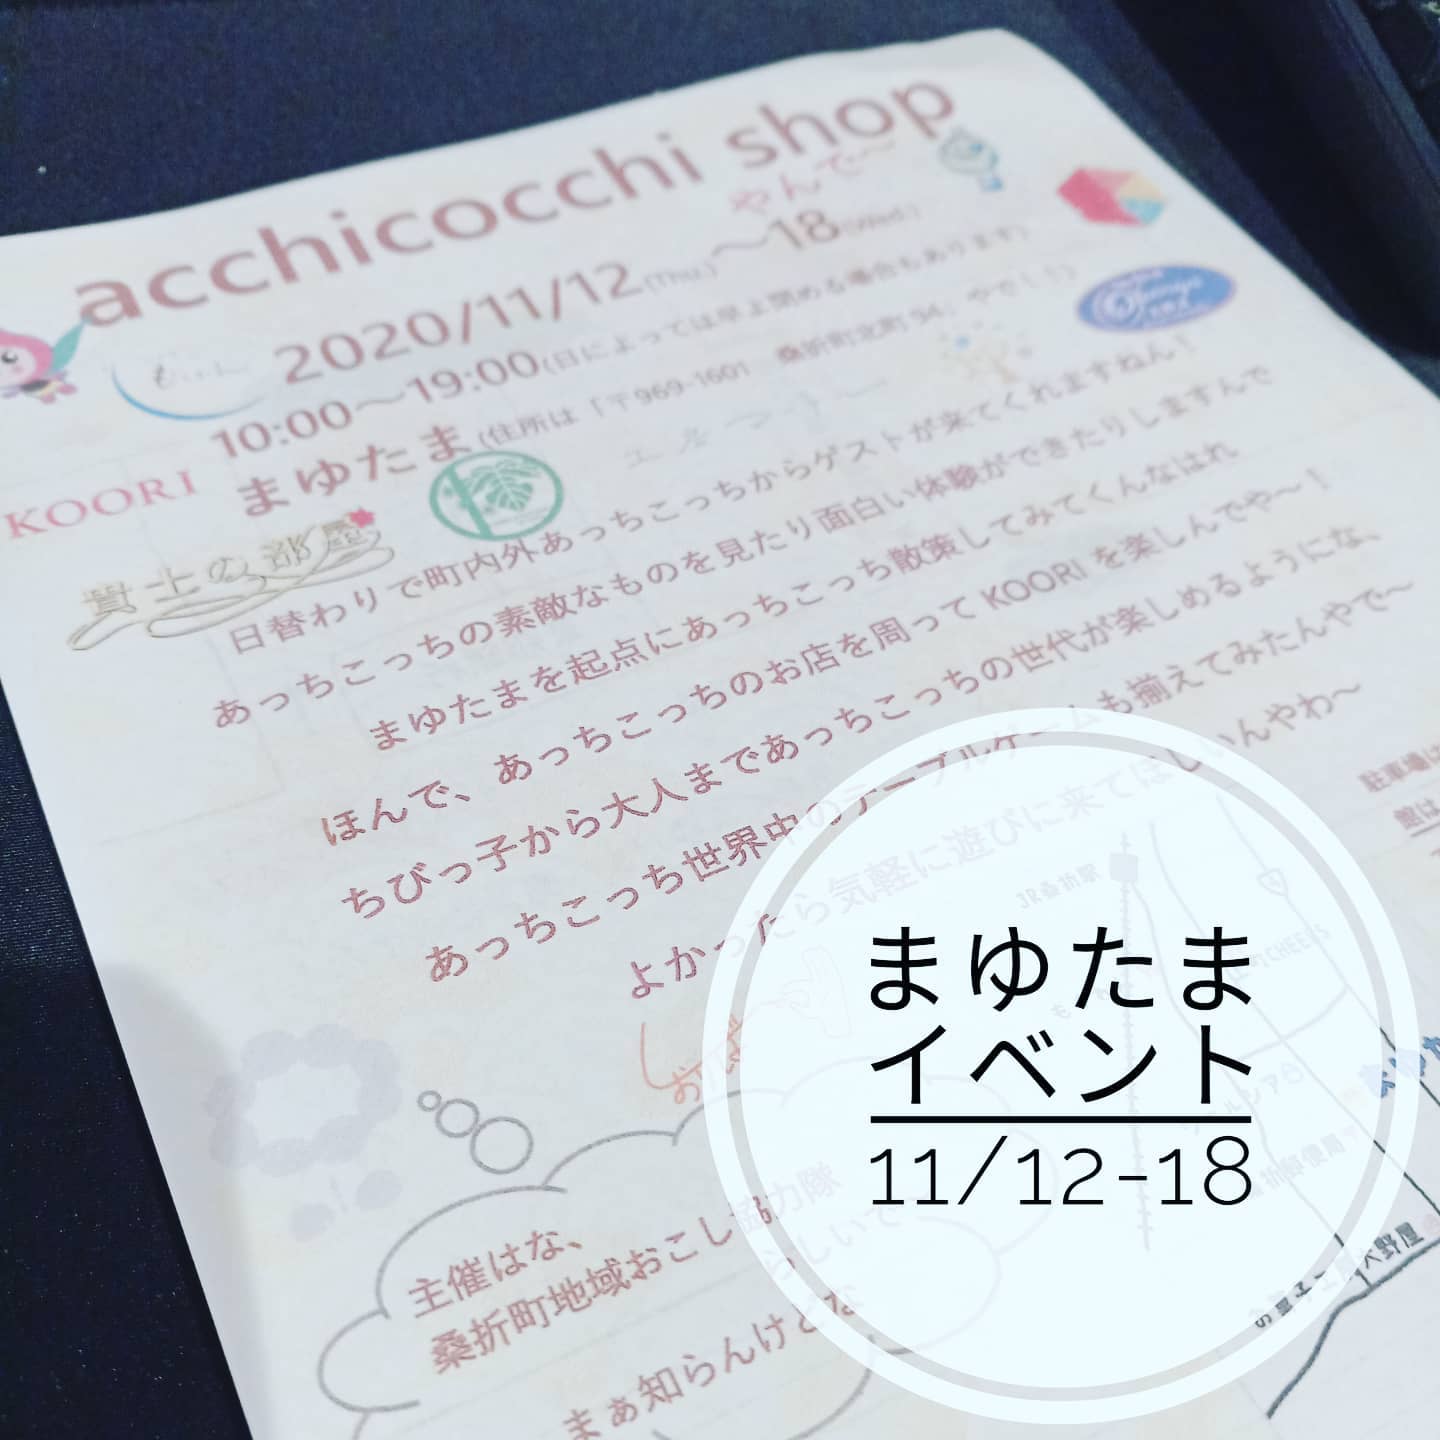 【注目やで!】同志である神戸から着任された地域おこし協力隊さん主催「あっちこっちからゲスト（私も！？）が来きて町を盛り上げる」acchicochi shop が「まゆたま」で開催です。ぜひお立ち寄り下さい。